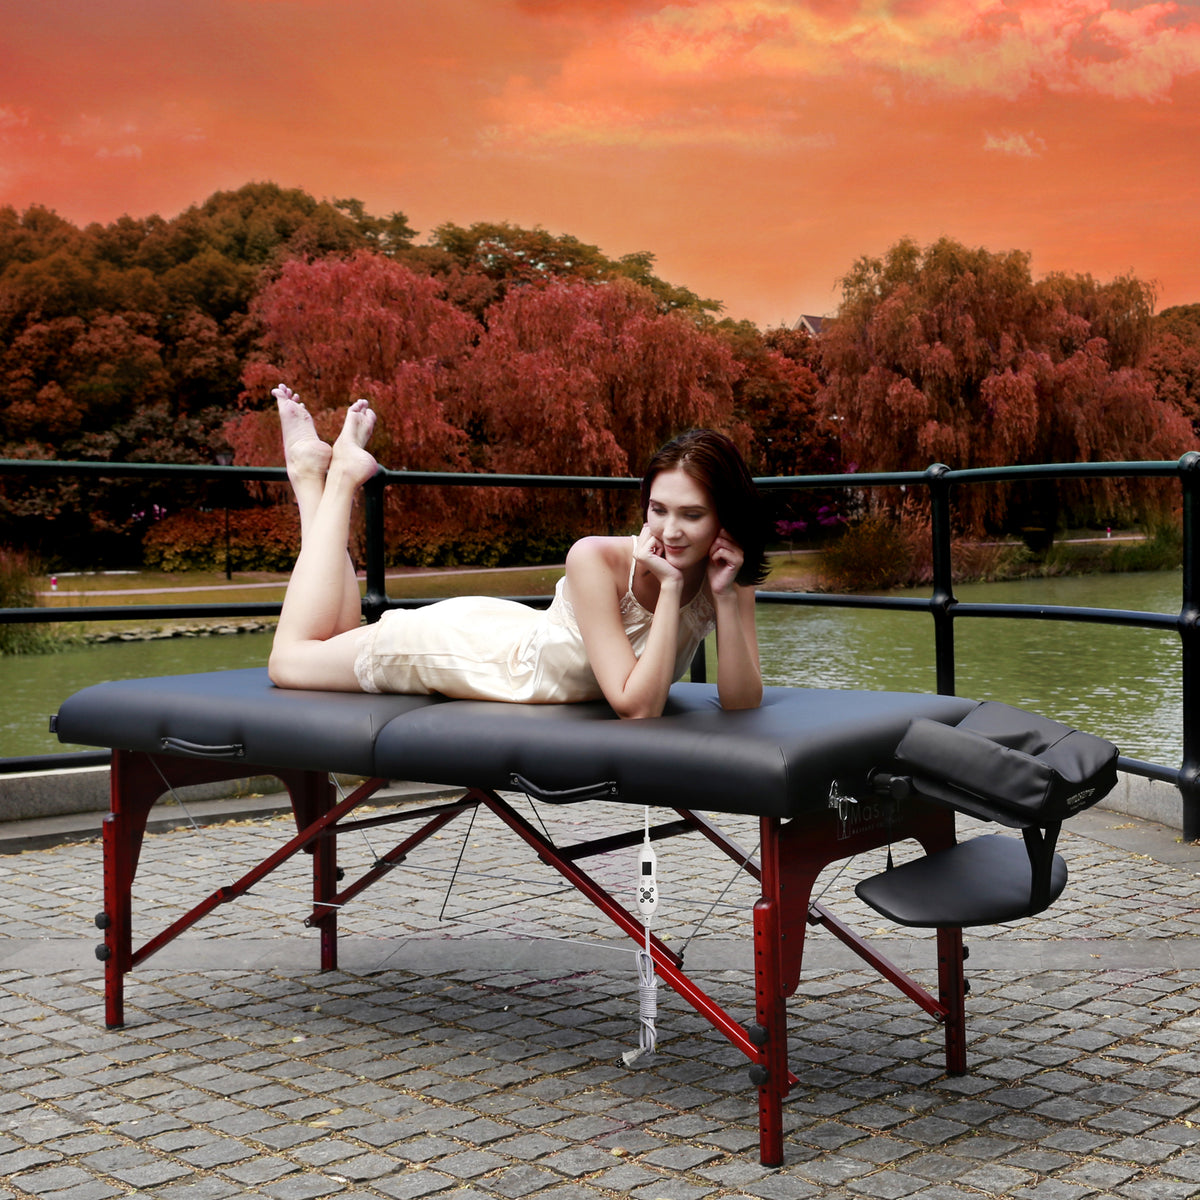 Master Massage - Montclair Portable Massage Table Black 31&quot; - Superb Massage Tables